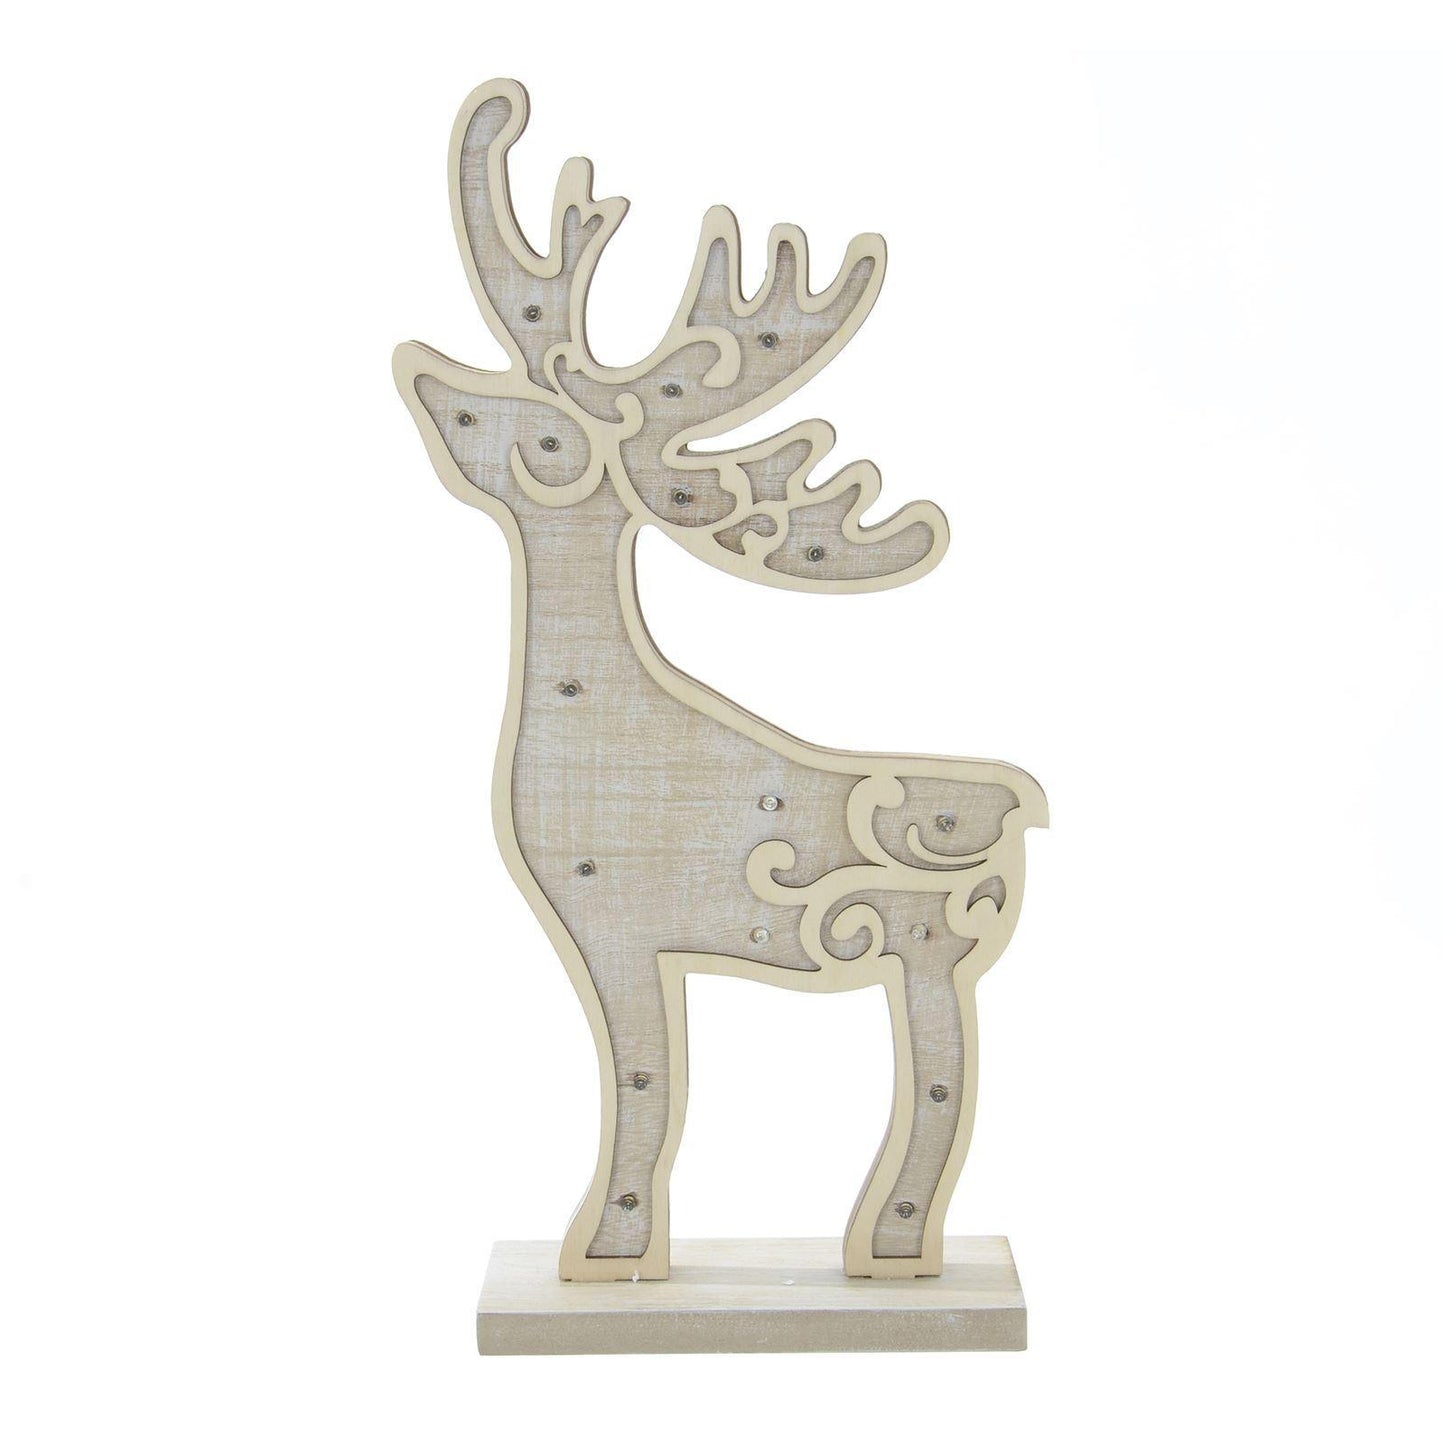 Mr Crimbo 16" Light Up Reindeer Wooden Christmas Decoration - MrCrimbo.co.uk -XS5069 - -decorations